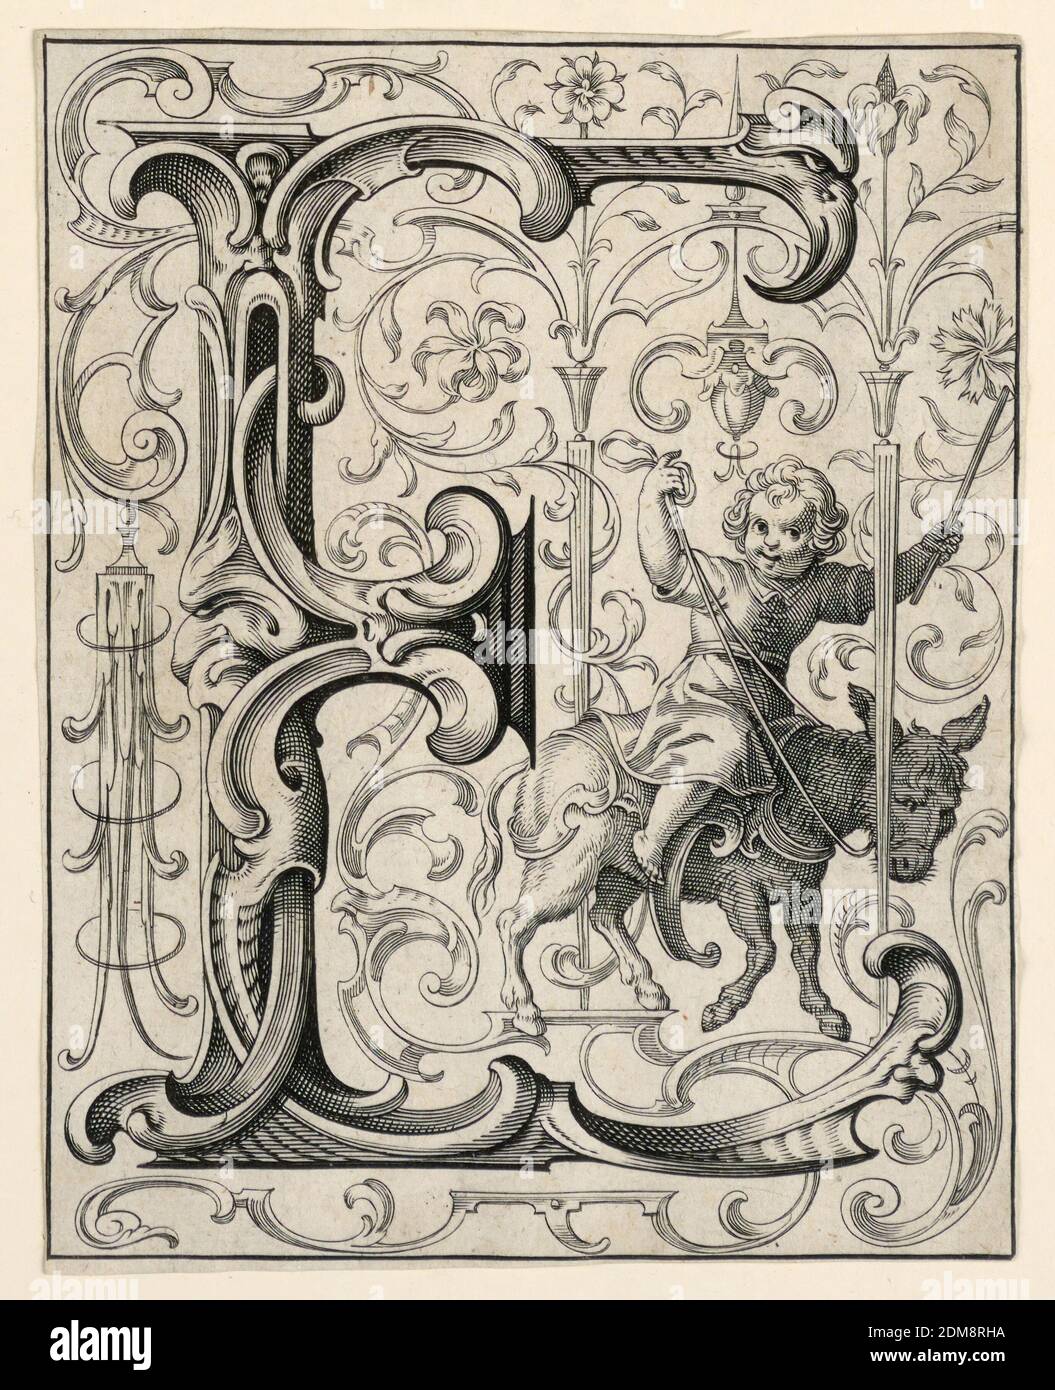 Panneau avec la lettre 'E' du 'Newes ABC Büechlein', Lukas Kilian, allemand, 1579 – 1637, engravant sur papier blanc cassé, UN garçon roule un âne ('Esel')., Augsberg, Allemagne, 1627, Imprimer Banque D'Images